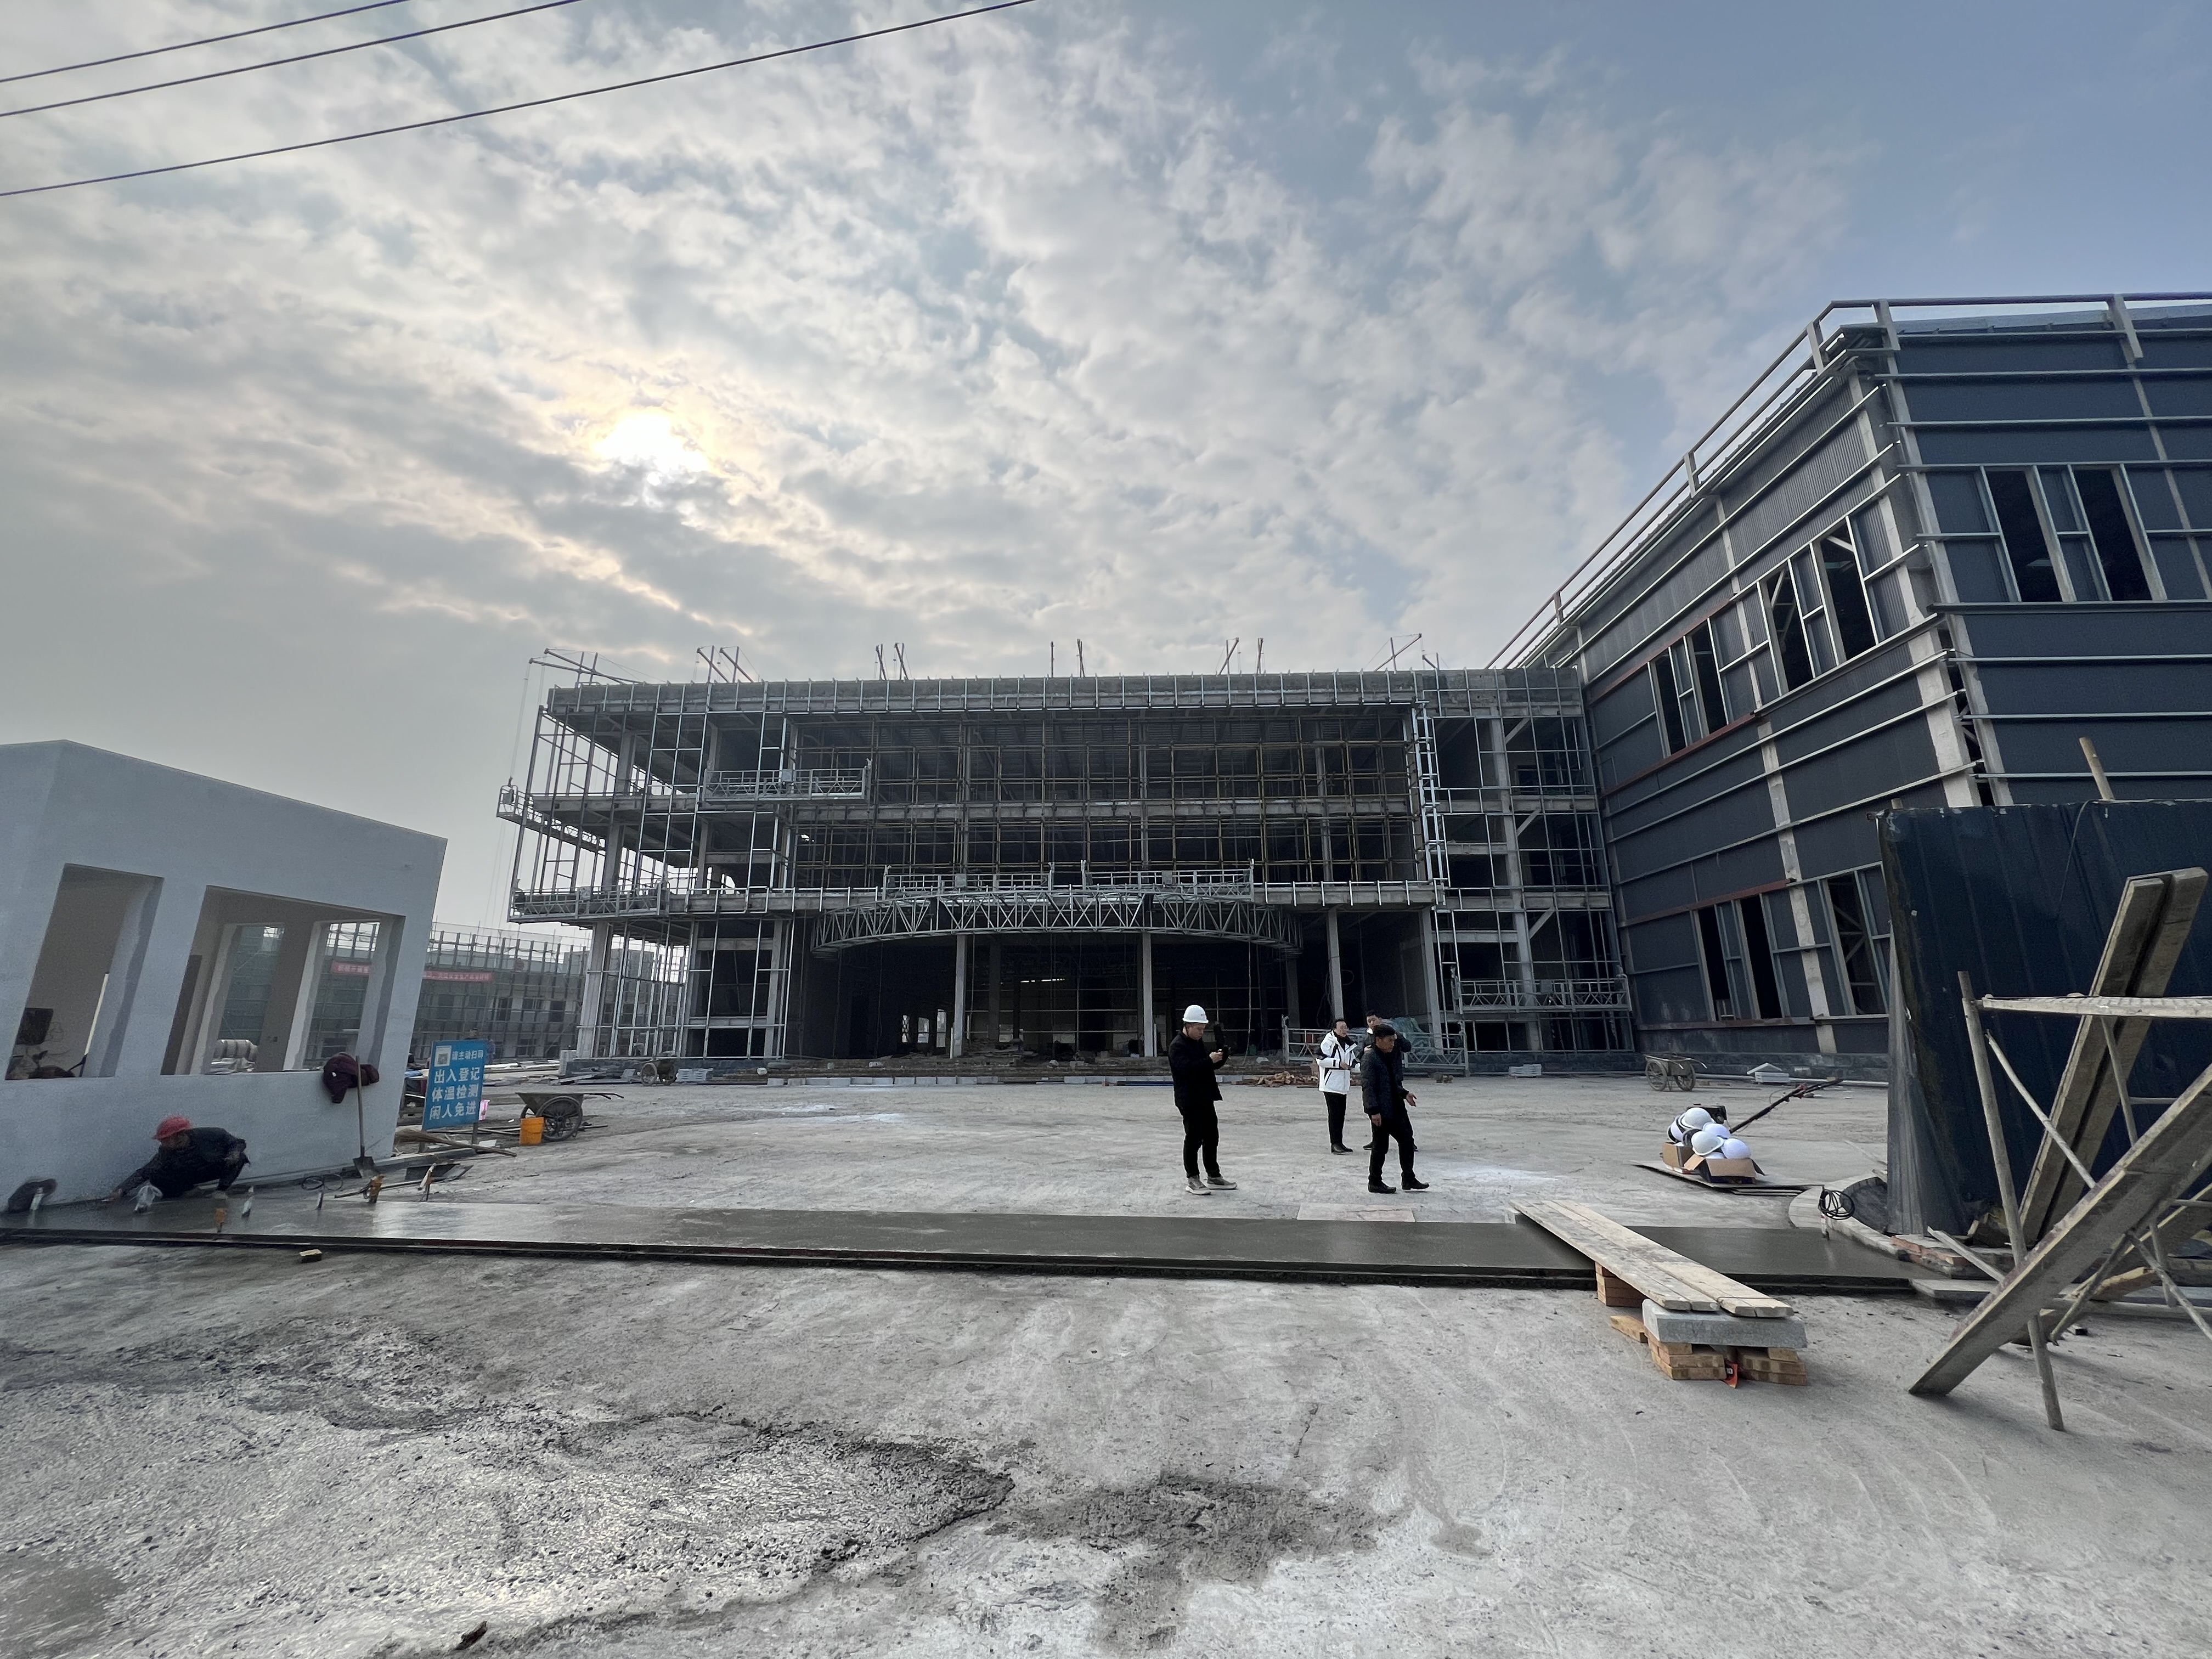 Kekuatan Baru dalam Mesin Pengemasan!Mesin Chengdu Jingwei – Pembangunan Pabrik Baru Kelang Dipercepat